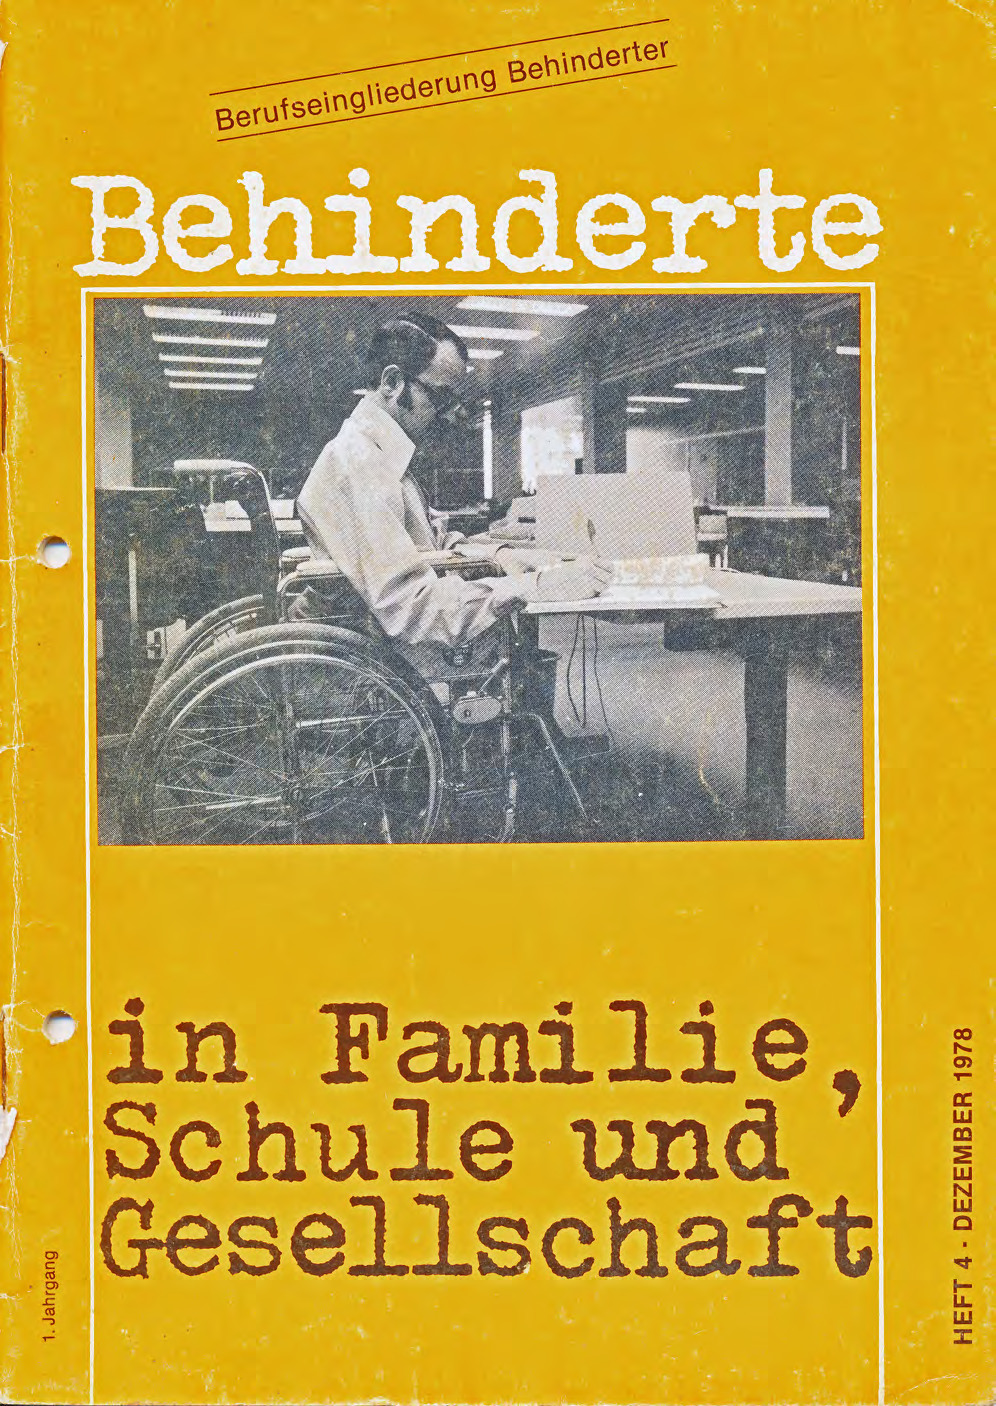 Titelbild der Zeitschrift BEHINDERTE MENSCHEN, Ausgabe 4/1978 "Berufseingliederung Behinderter"